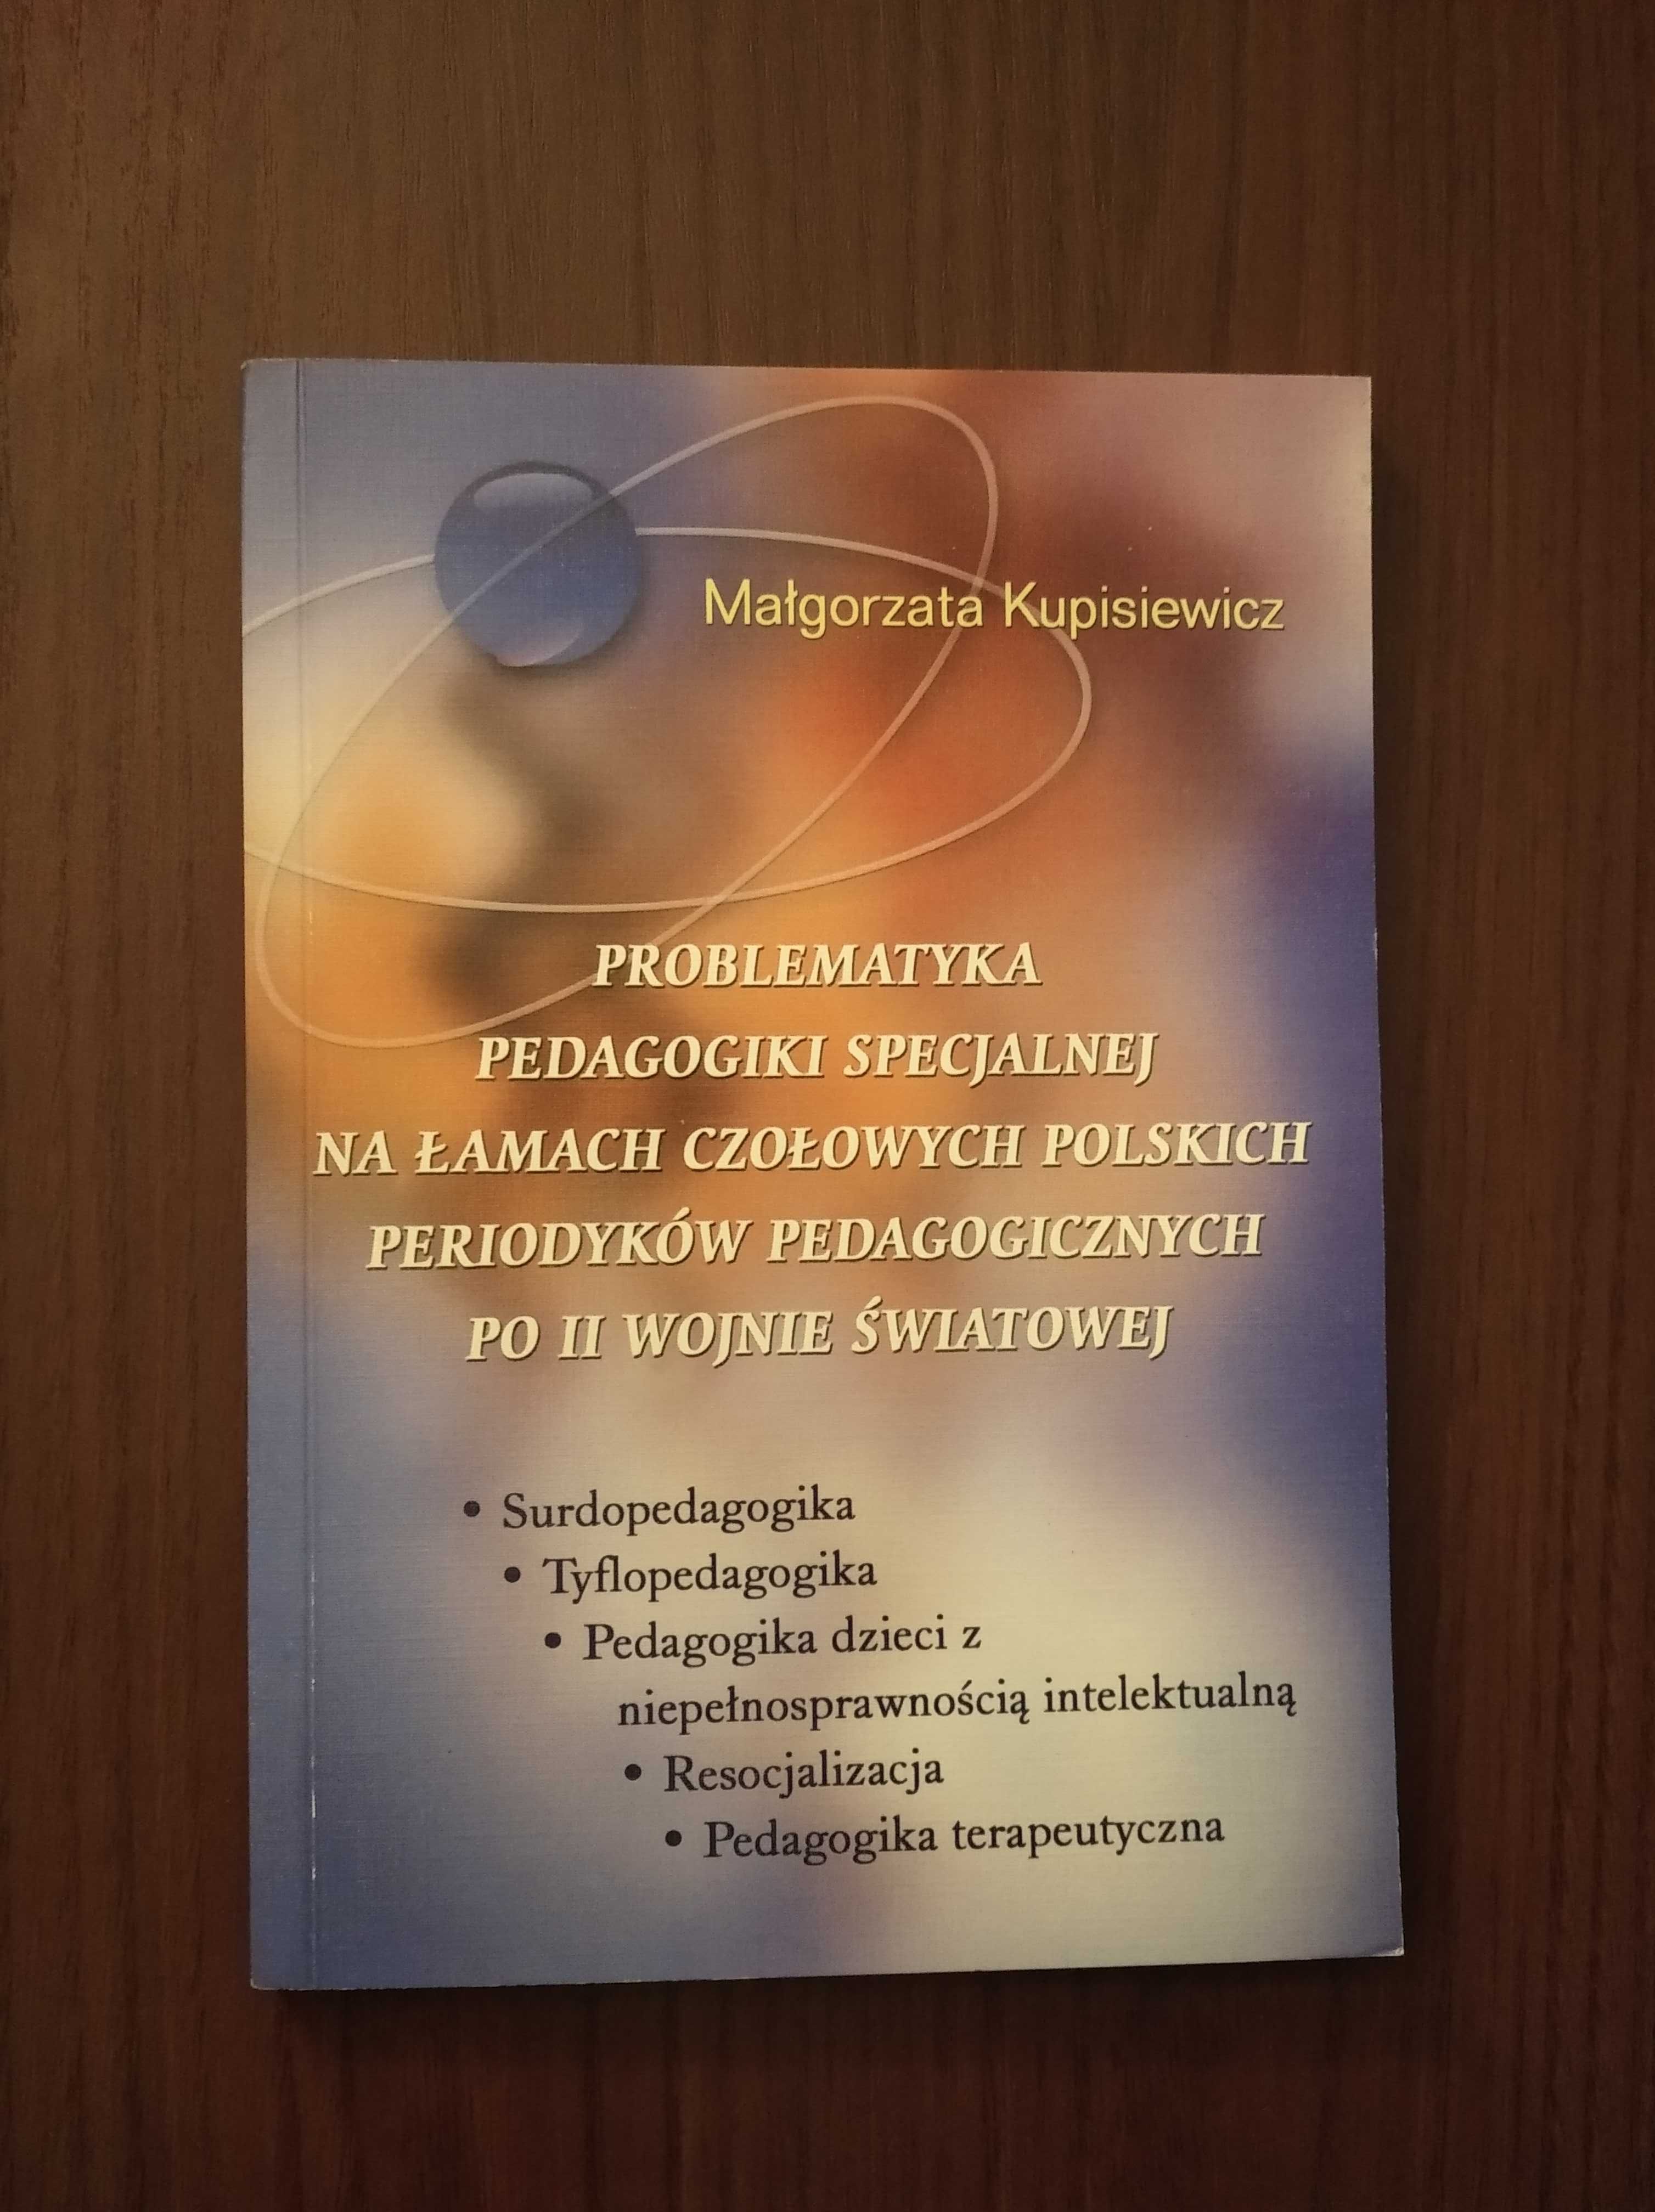 "Problematyka pedagogiki specjalnej..." M. Kupisiewicz